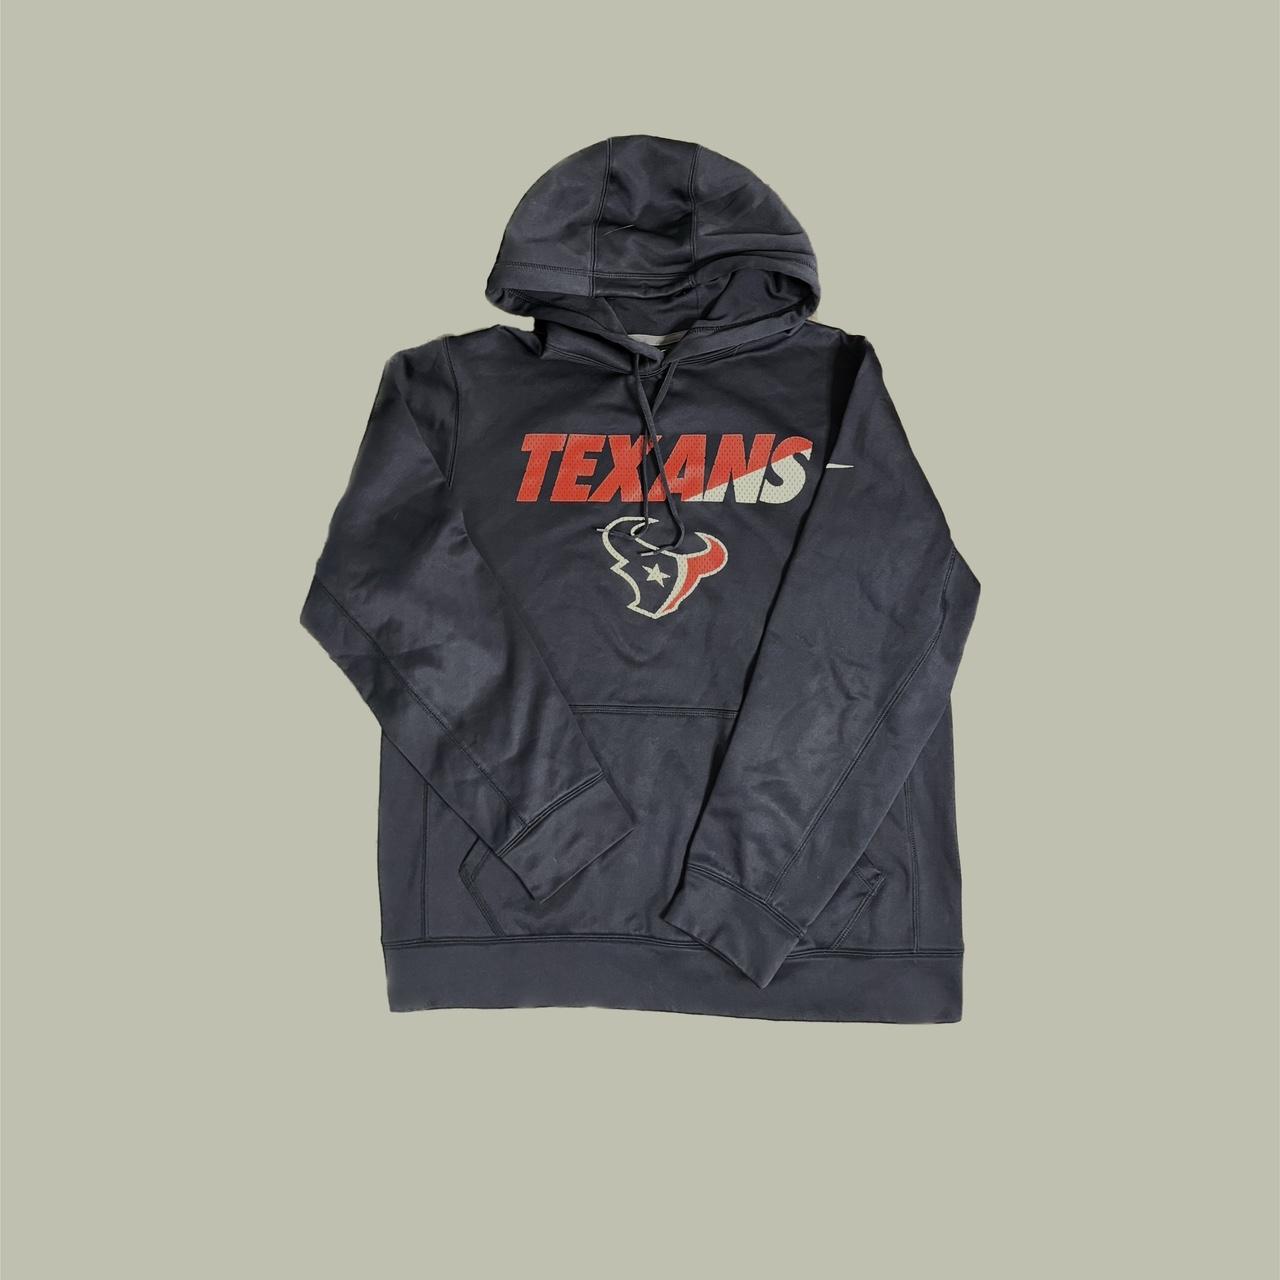 texans x nike graphic hoodie size M dope navy n red - Depop